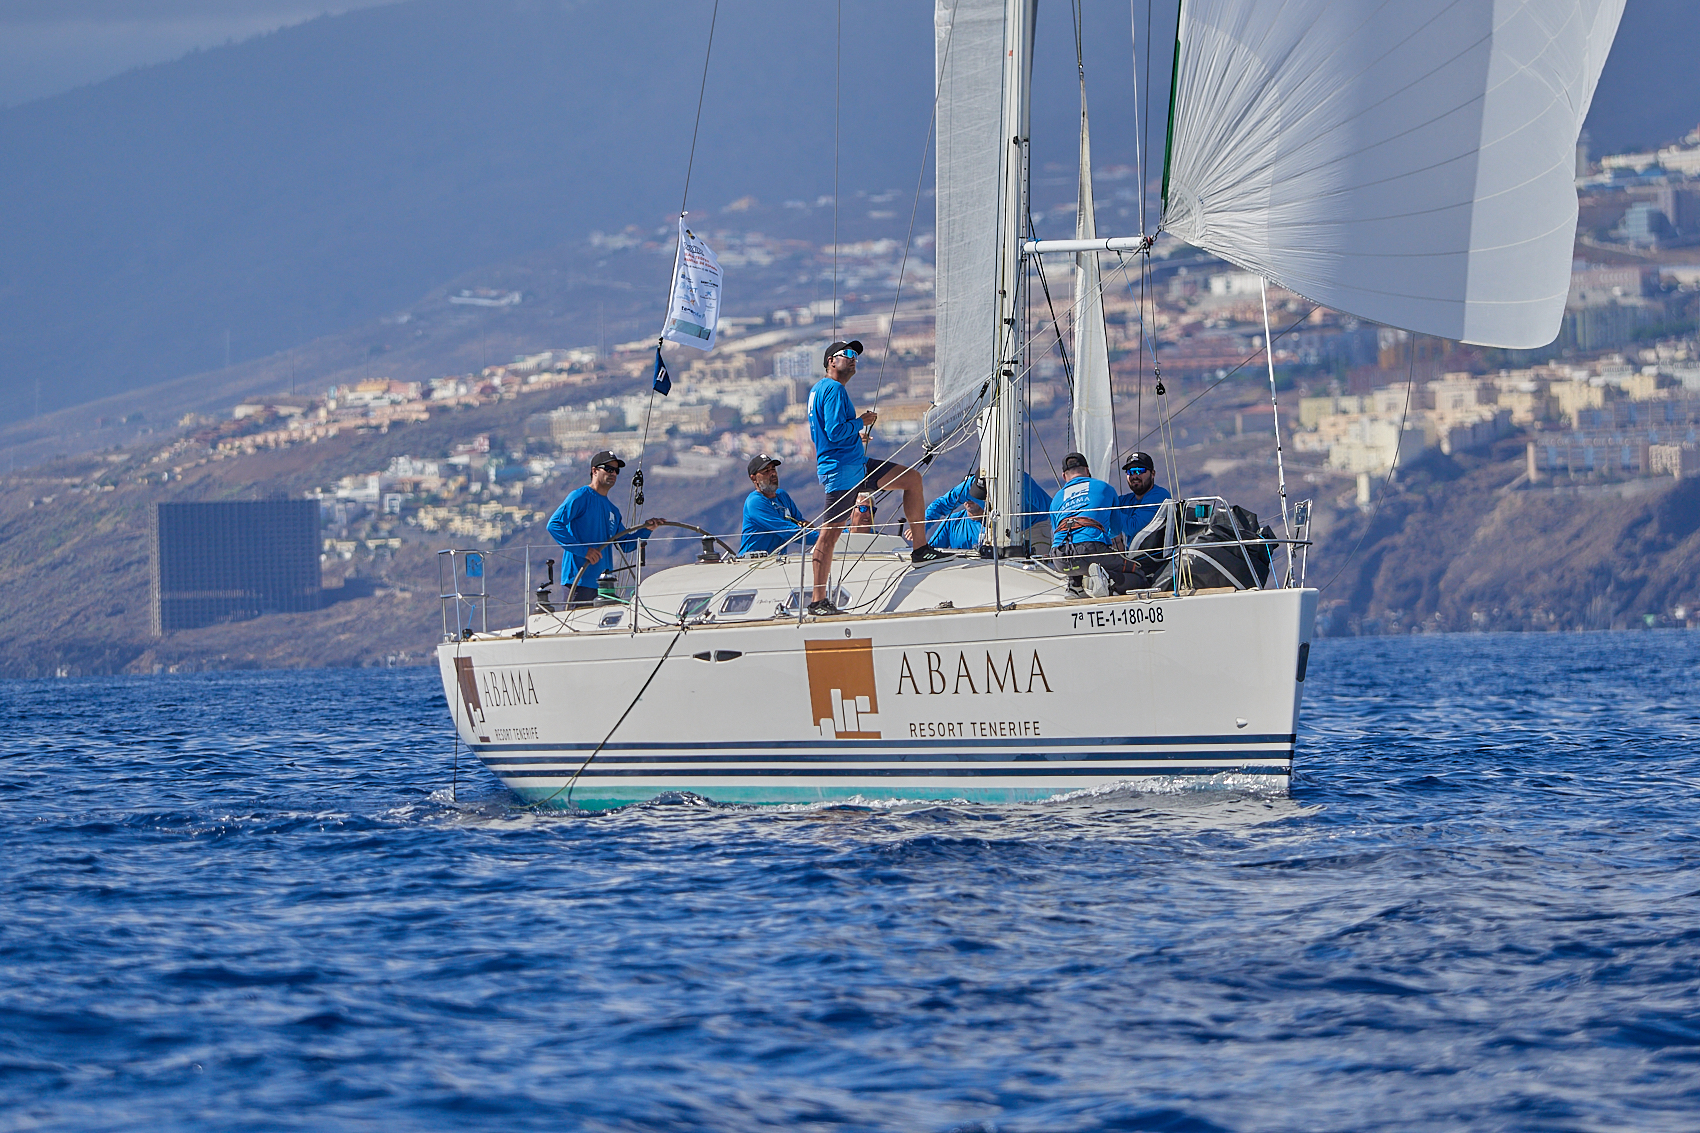 Abama Resort Tenerife gana por segunda vez consecutiva el Trofeo Infantas de España en la clase ORC-3